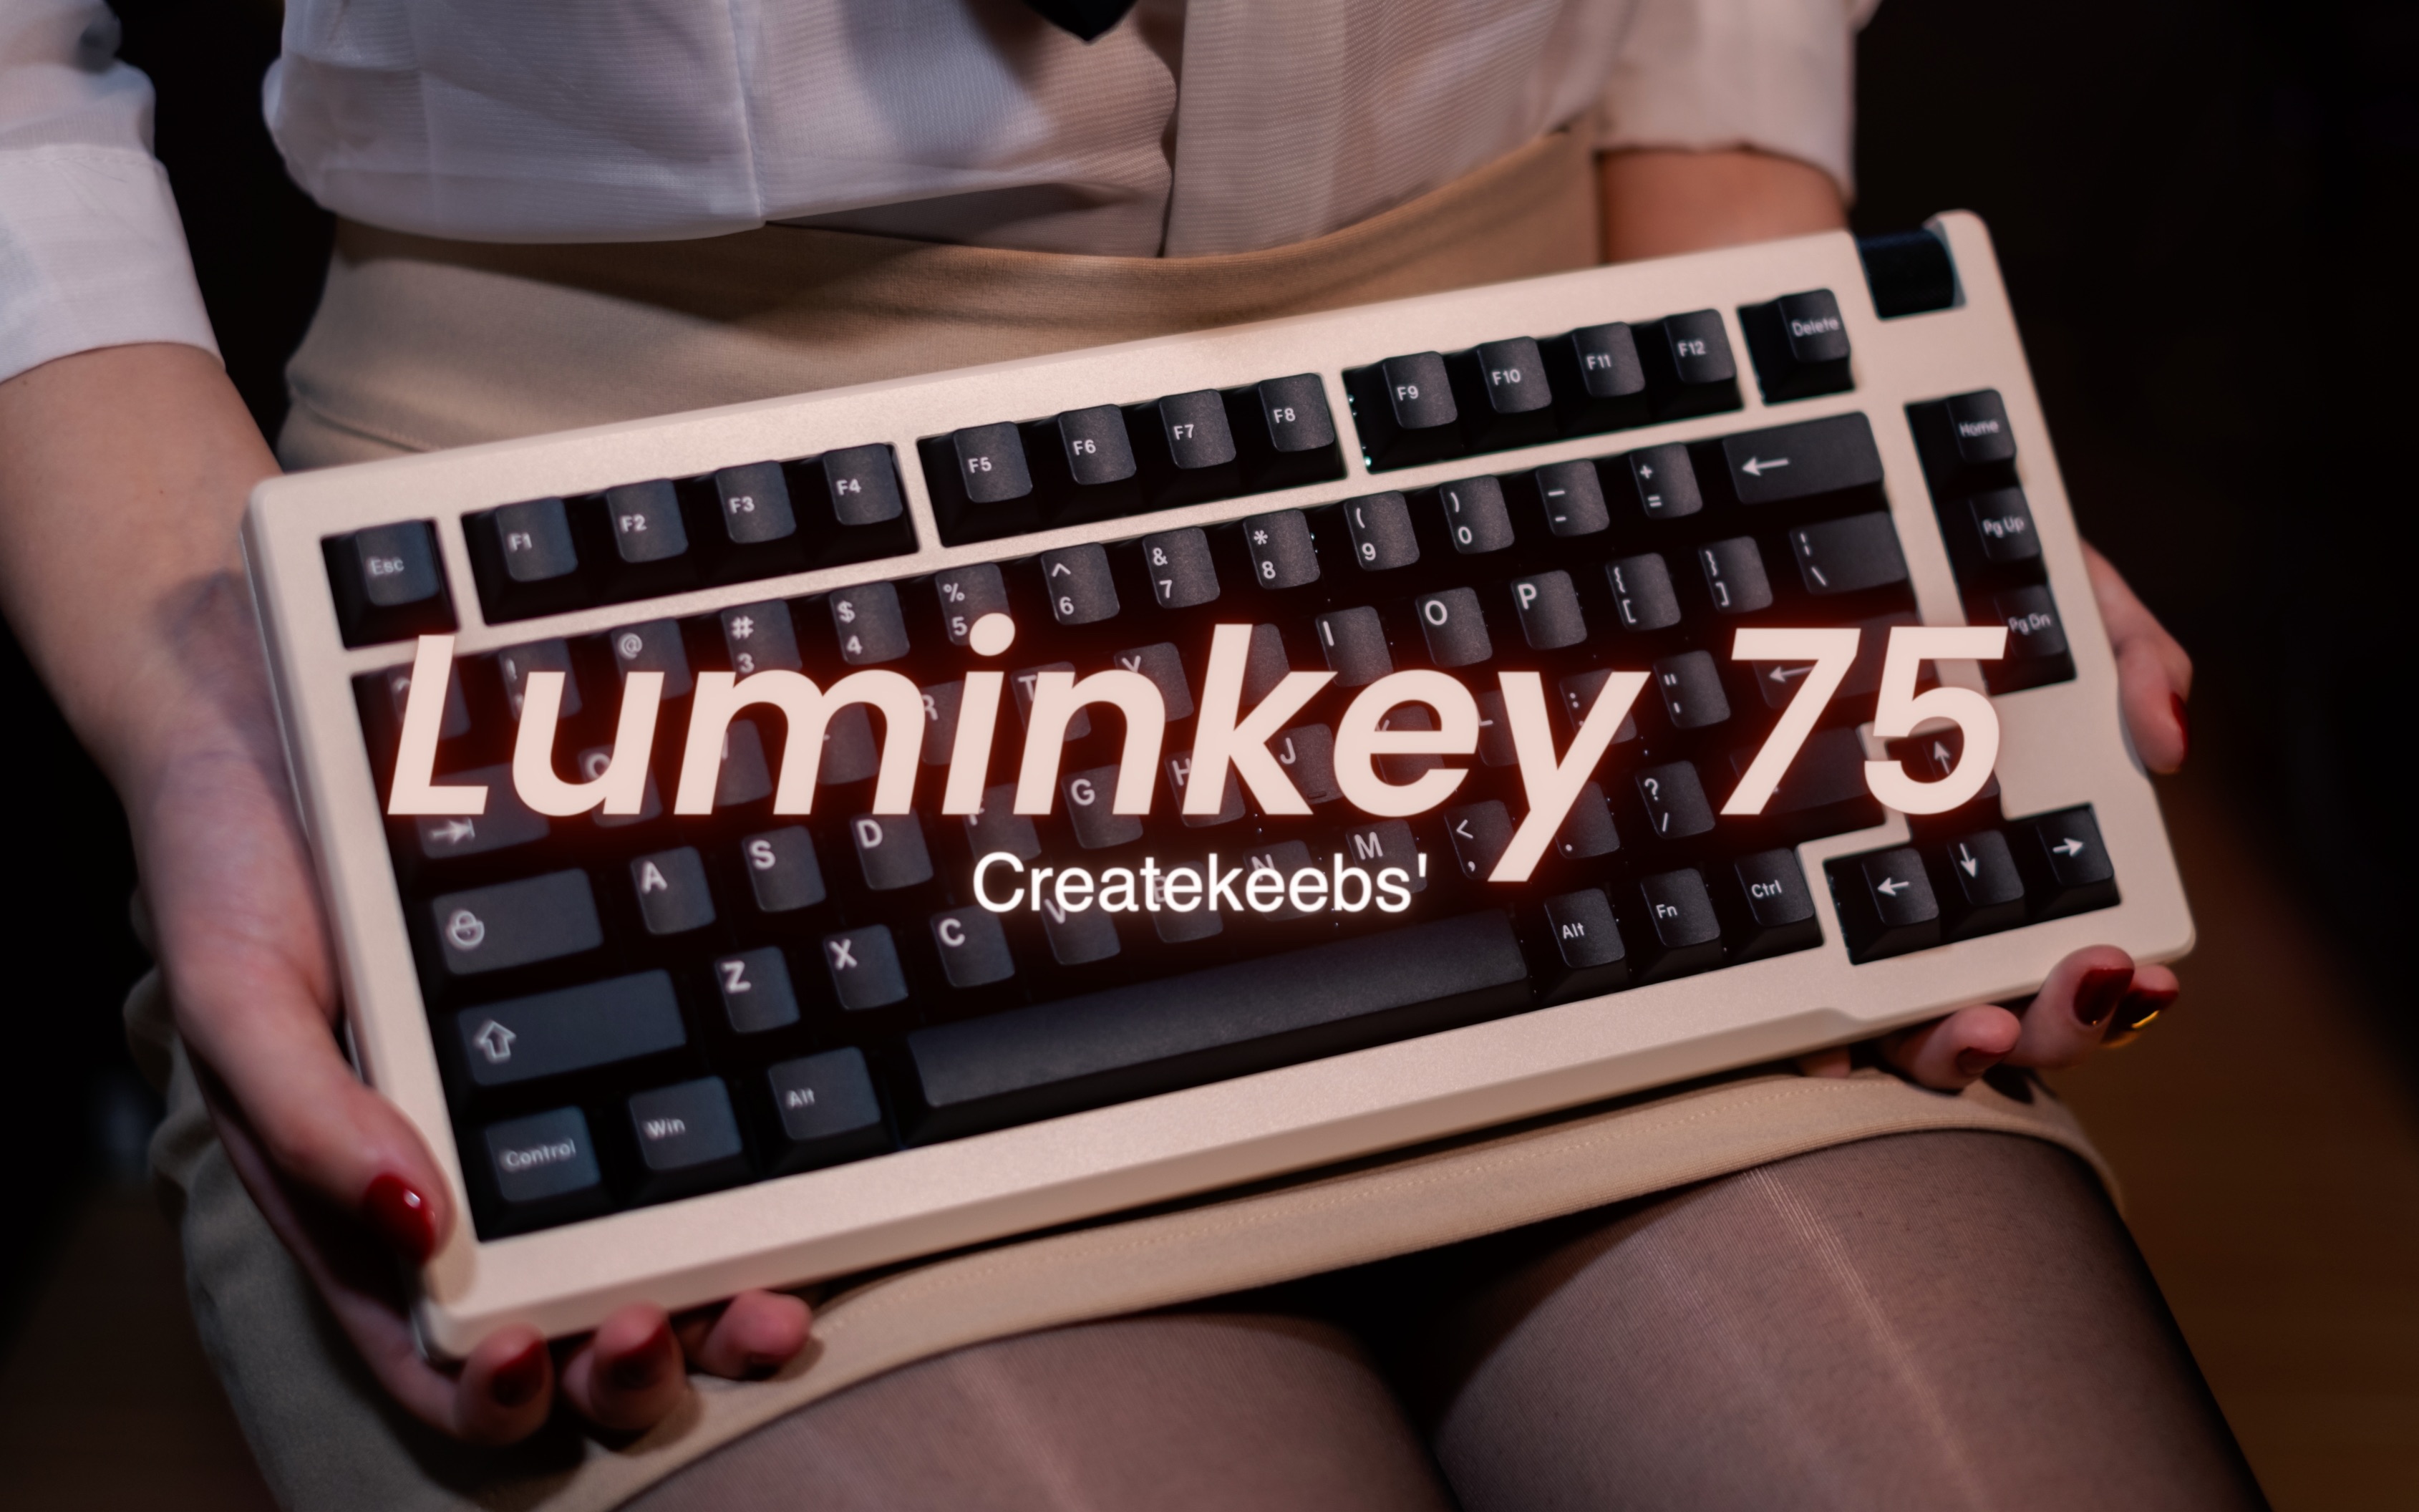 【装备】涩气开箱Luminkey 75 By Createkeebs热插拔成品机械键盘游戏键盘客制化机械键盘键盘套件阳极打字音助眠【辣椒】